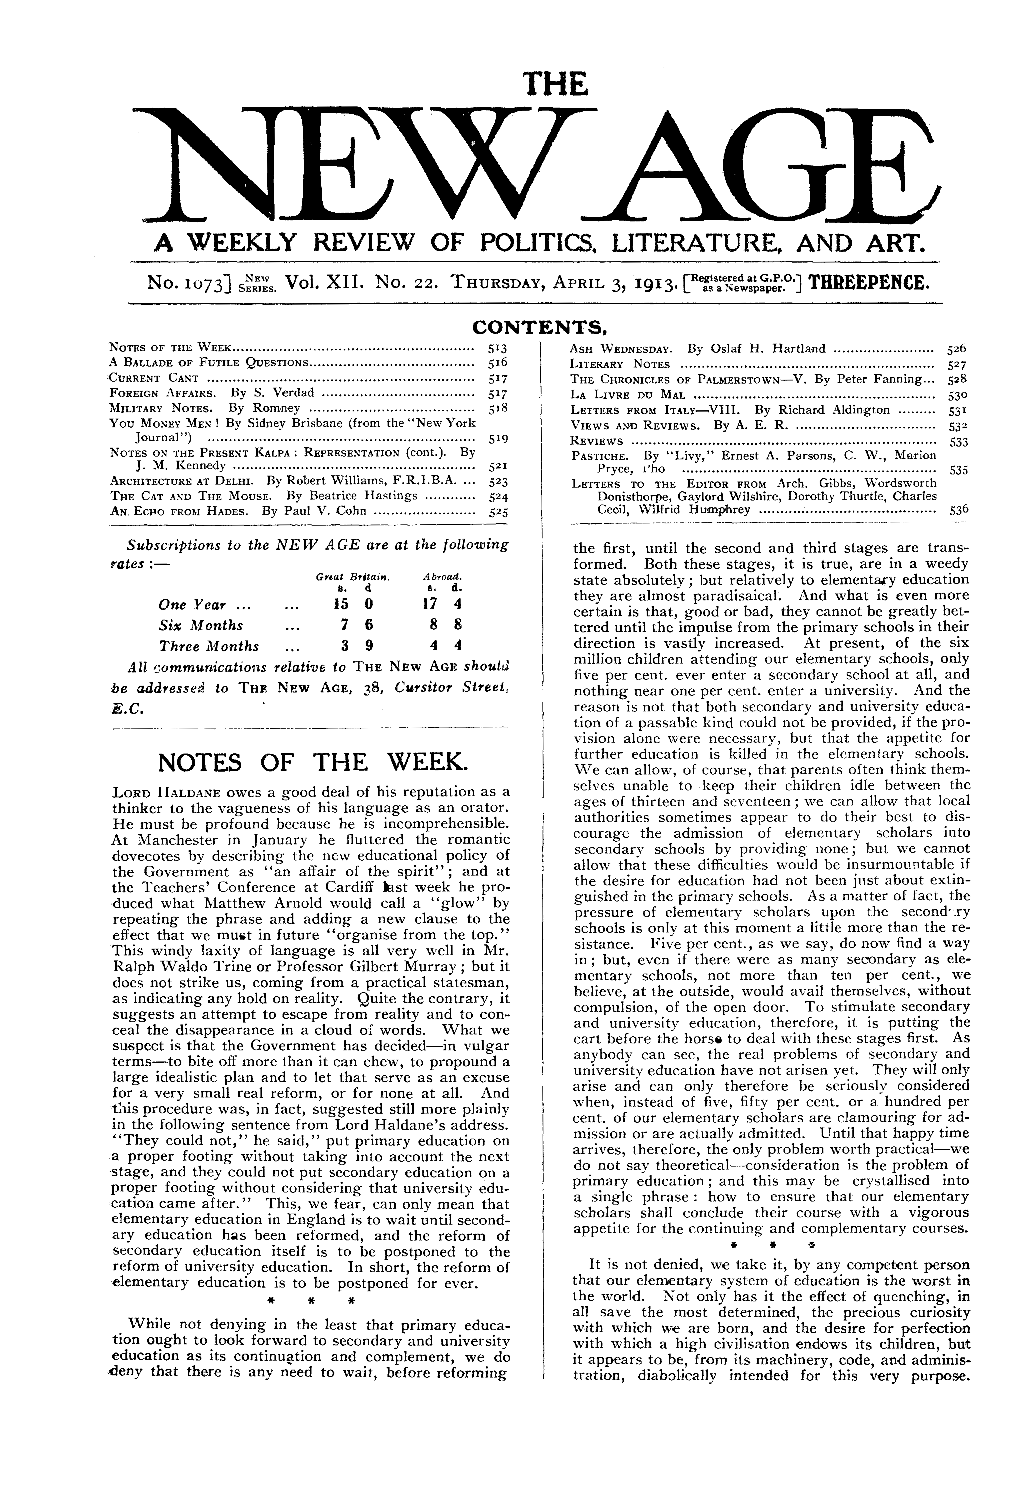 New Age, Vol.12, No.22, April 3, 1913